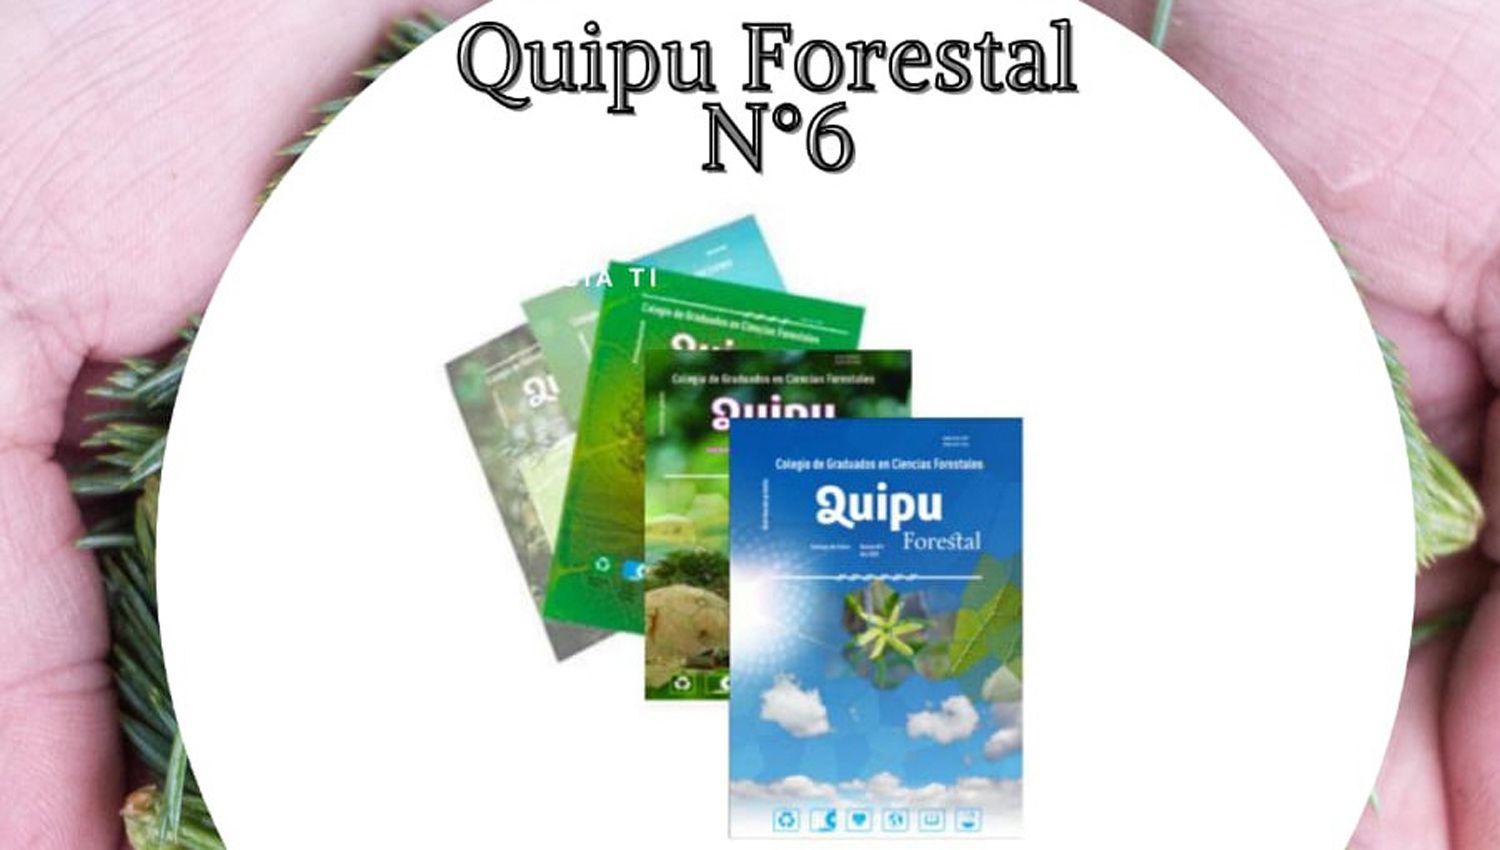 Se trata de la 6� edición de la revista creada en el Colegio de Ciencias Forestales local